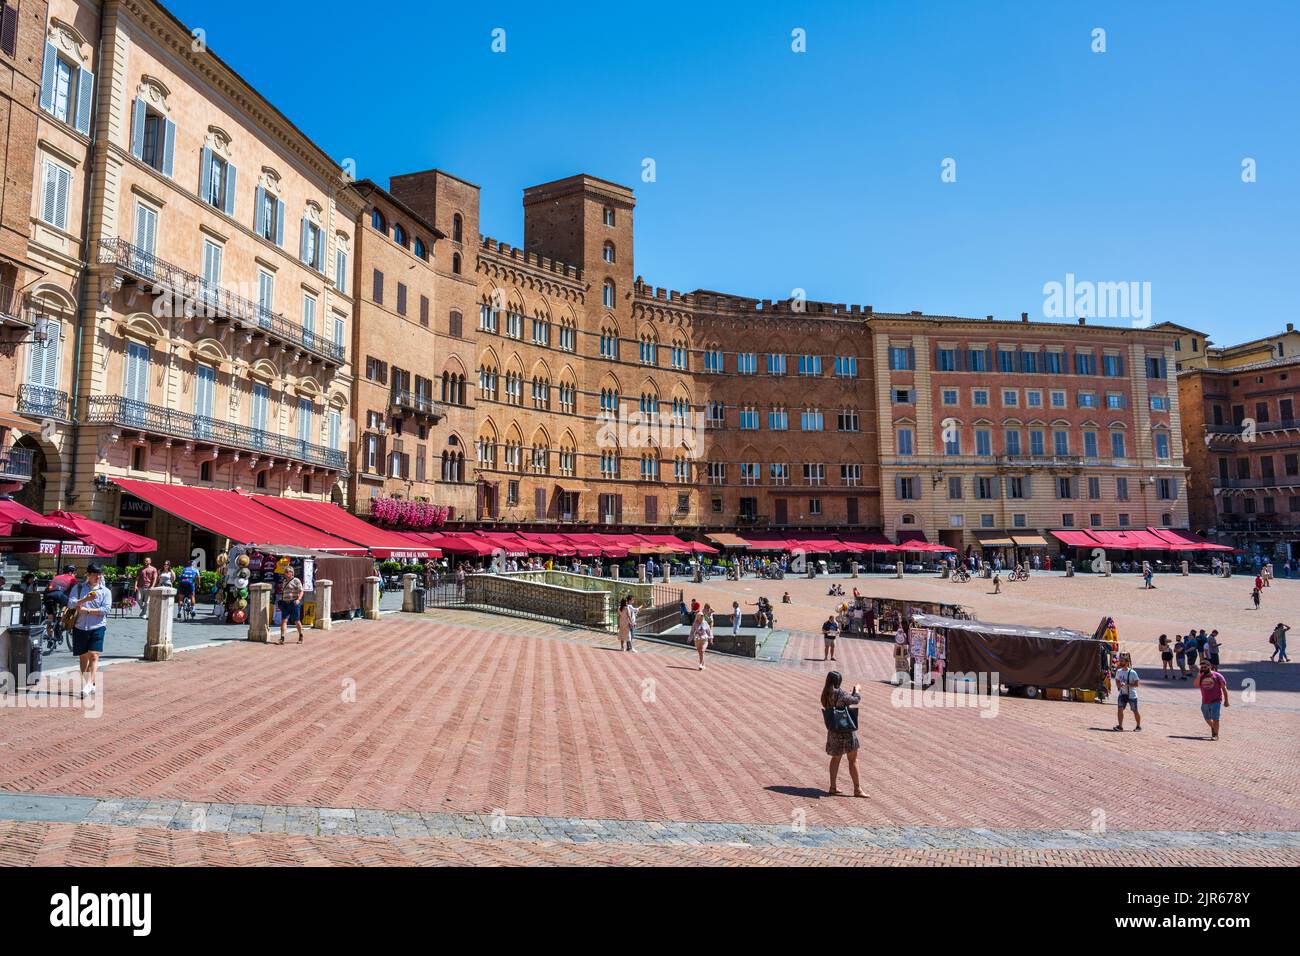 Vista general de la Piazza del Campo en Siena, Toscana, Italia Foto de stock